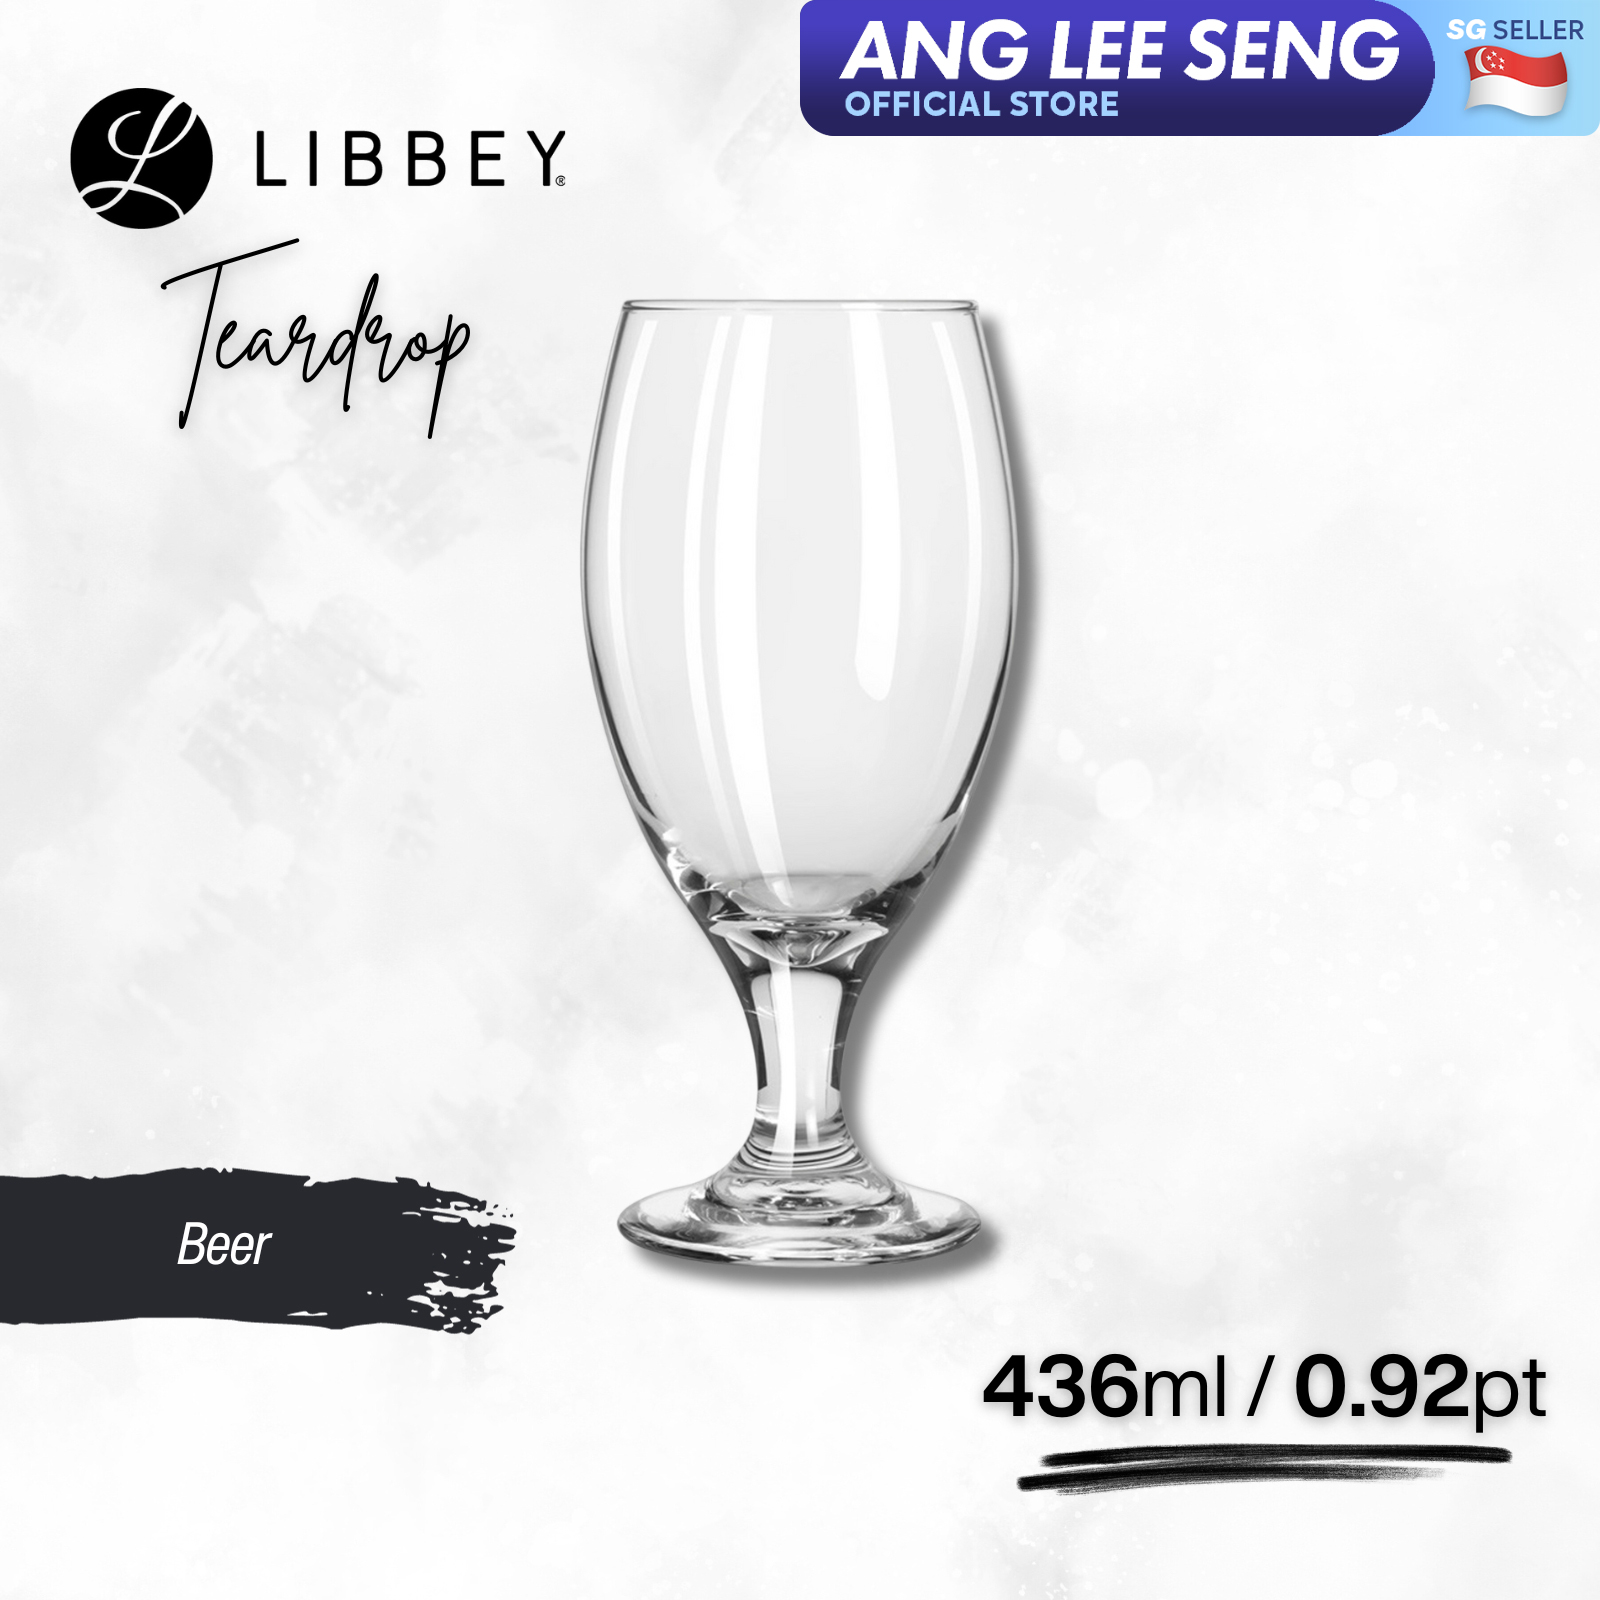 Libbey Teardrop 3915 Stemmed Beer Glass 436ml/0.92pt, 2-pc/6-pc Set